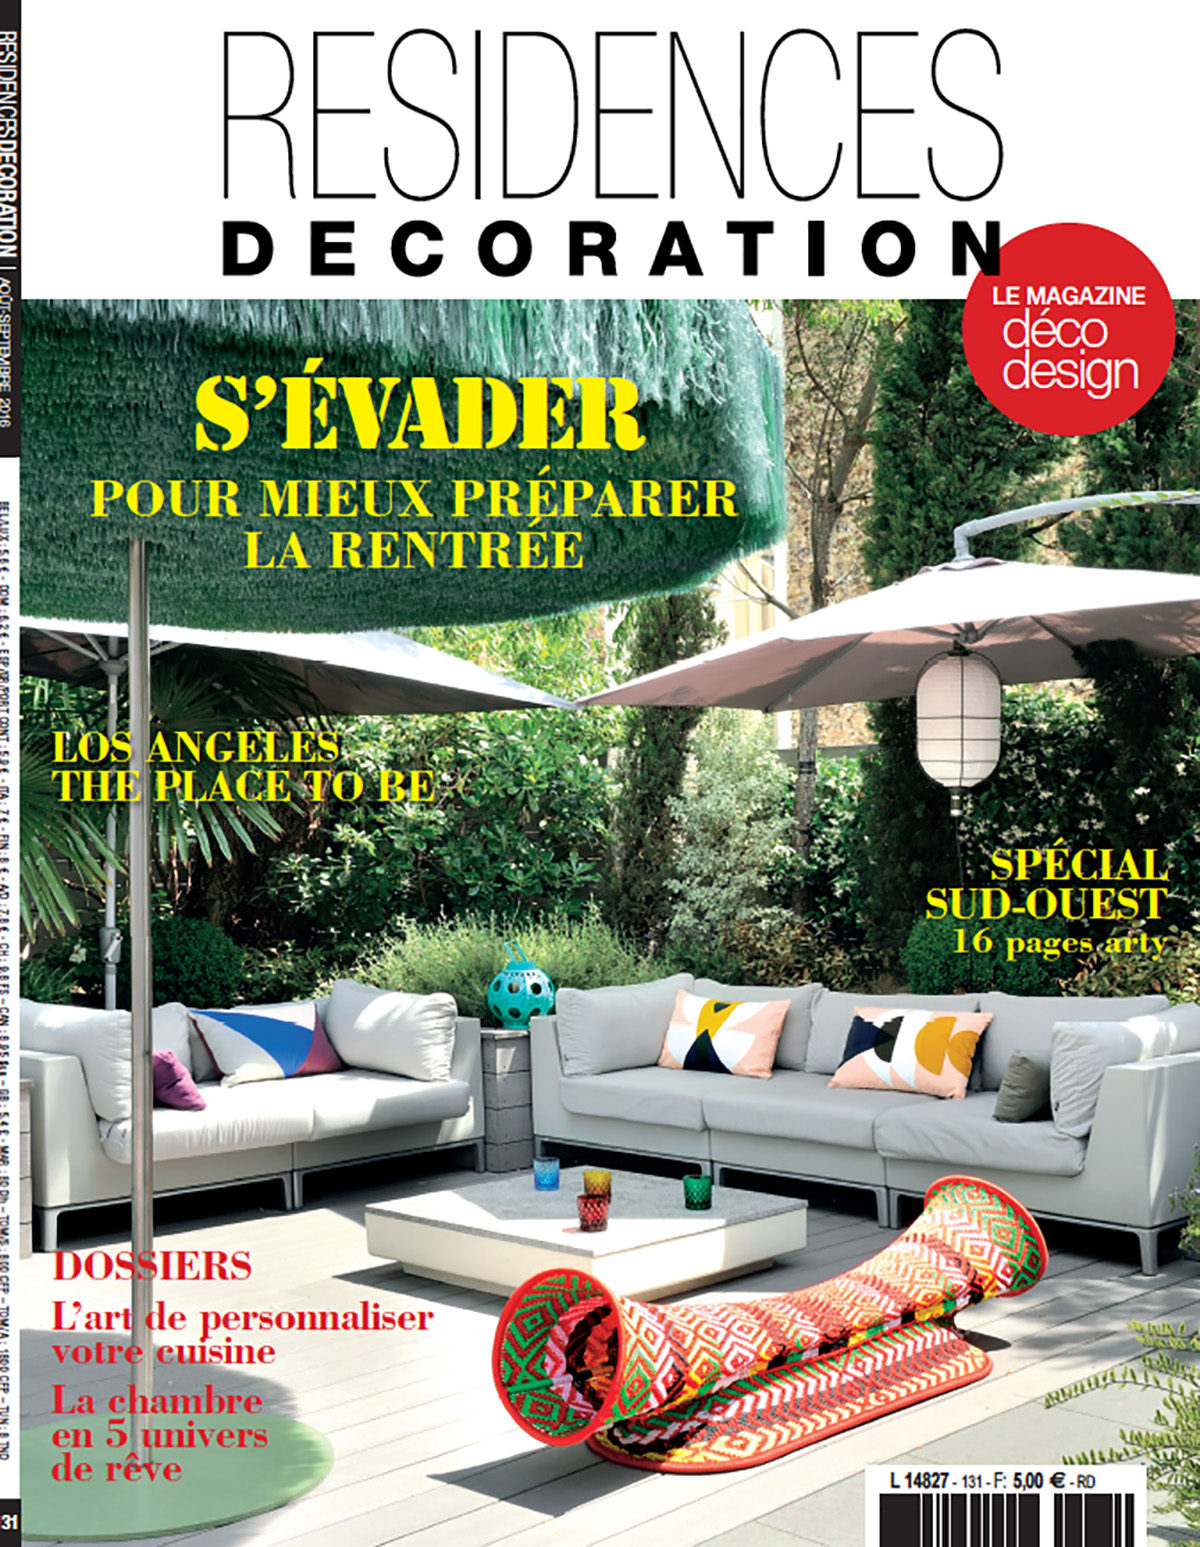 Parution presse RESIDENCES DECORATION 2016 Claude Cartier décoration architecte d'intérieur à Lyon.